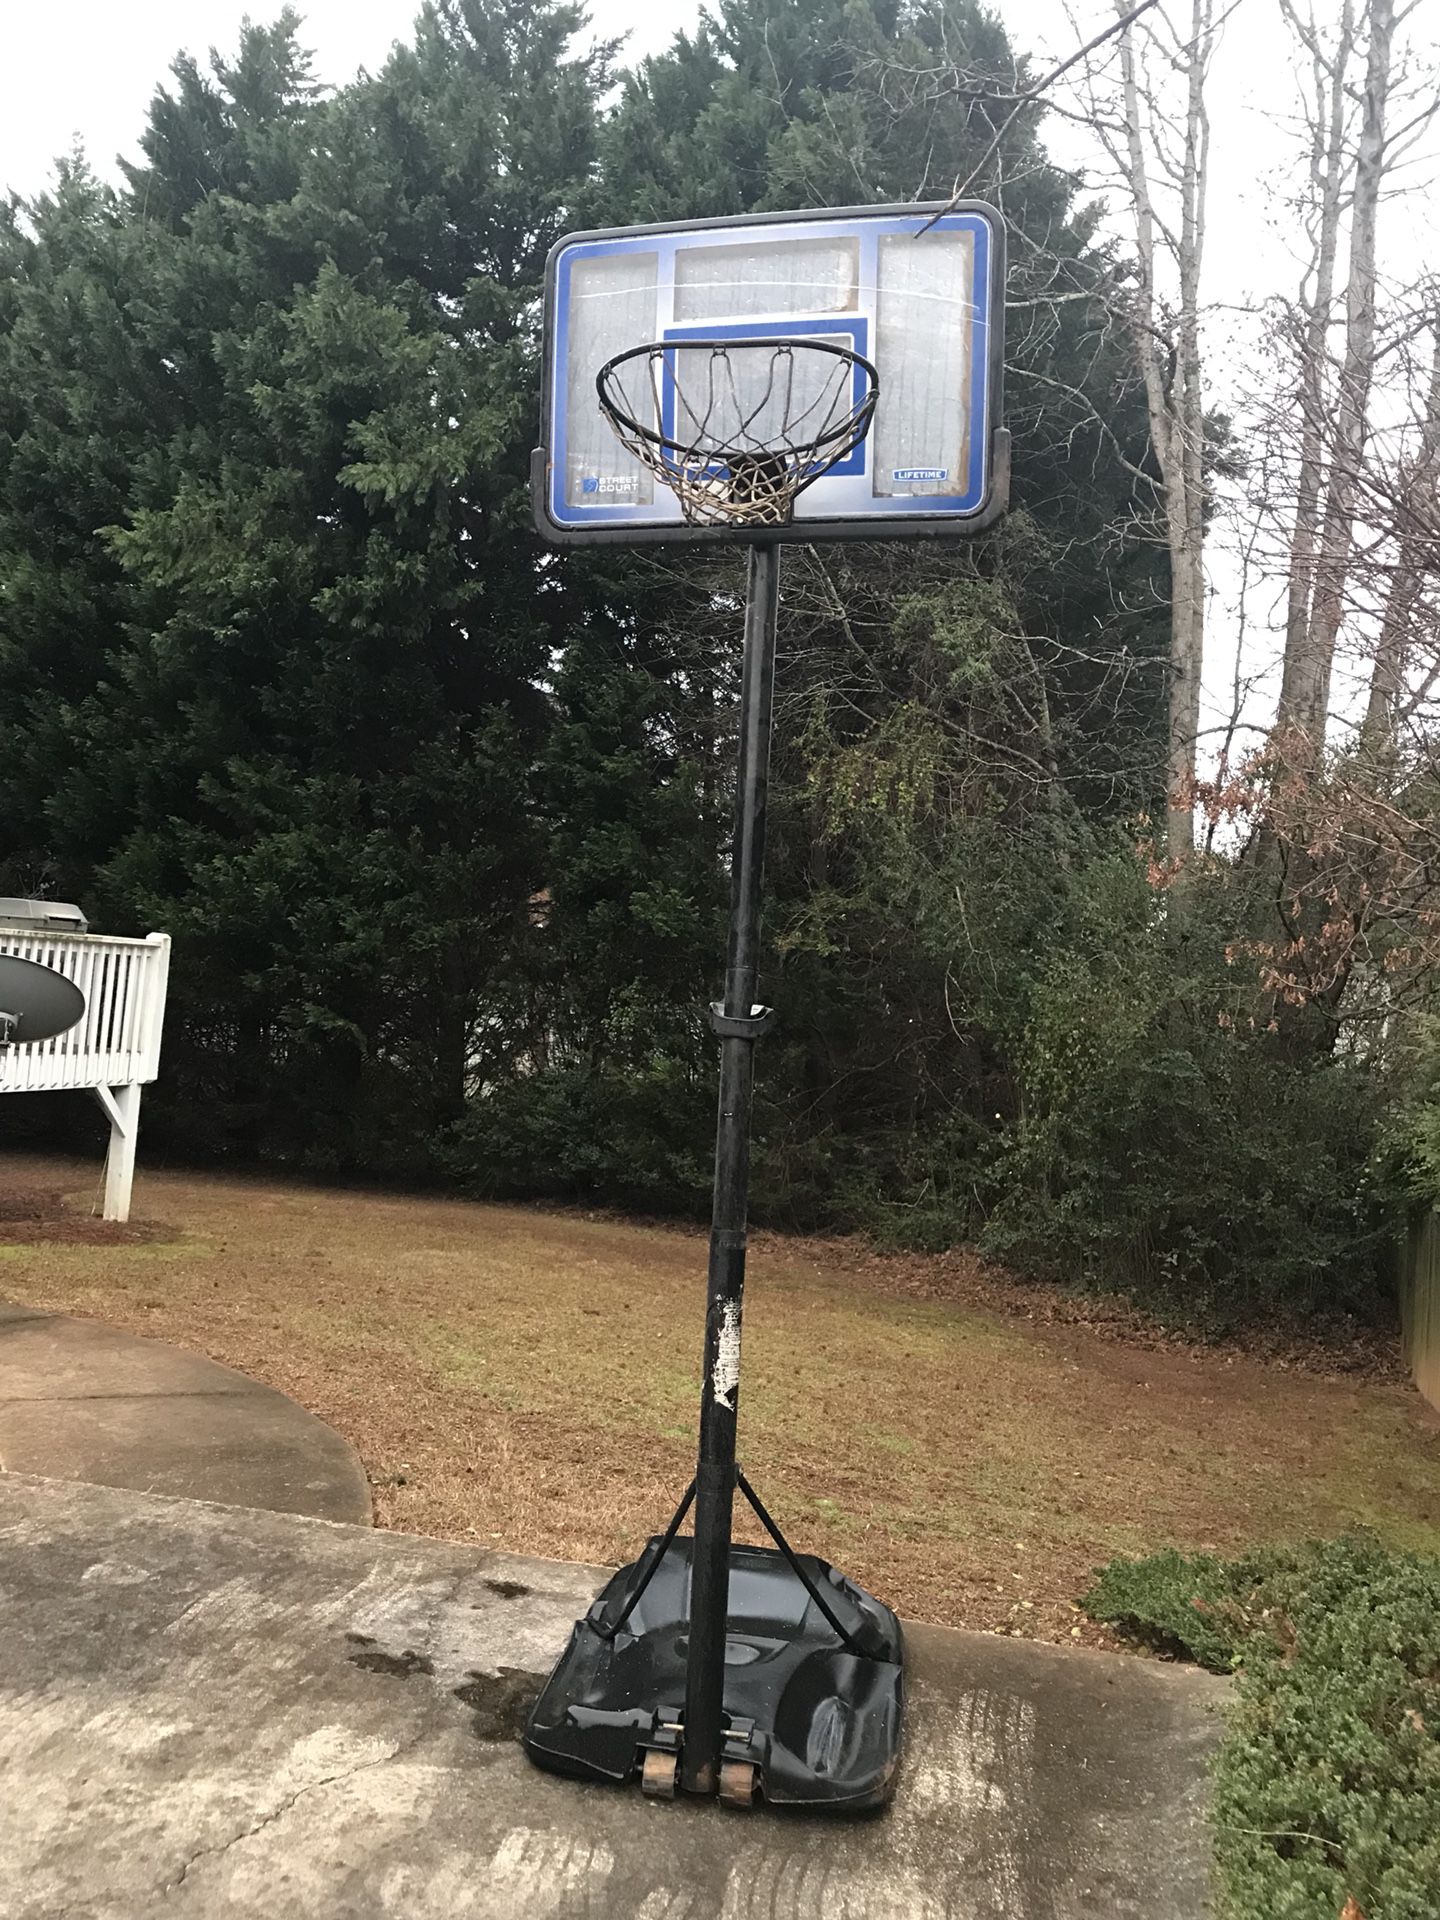 Driveway basketball hoop